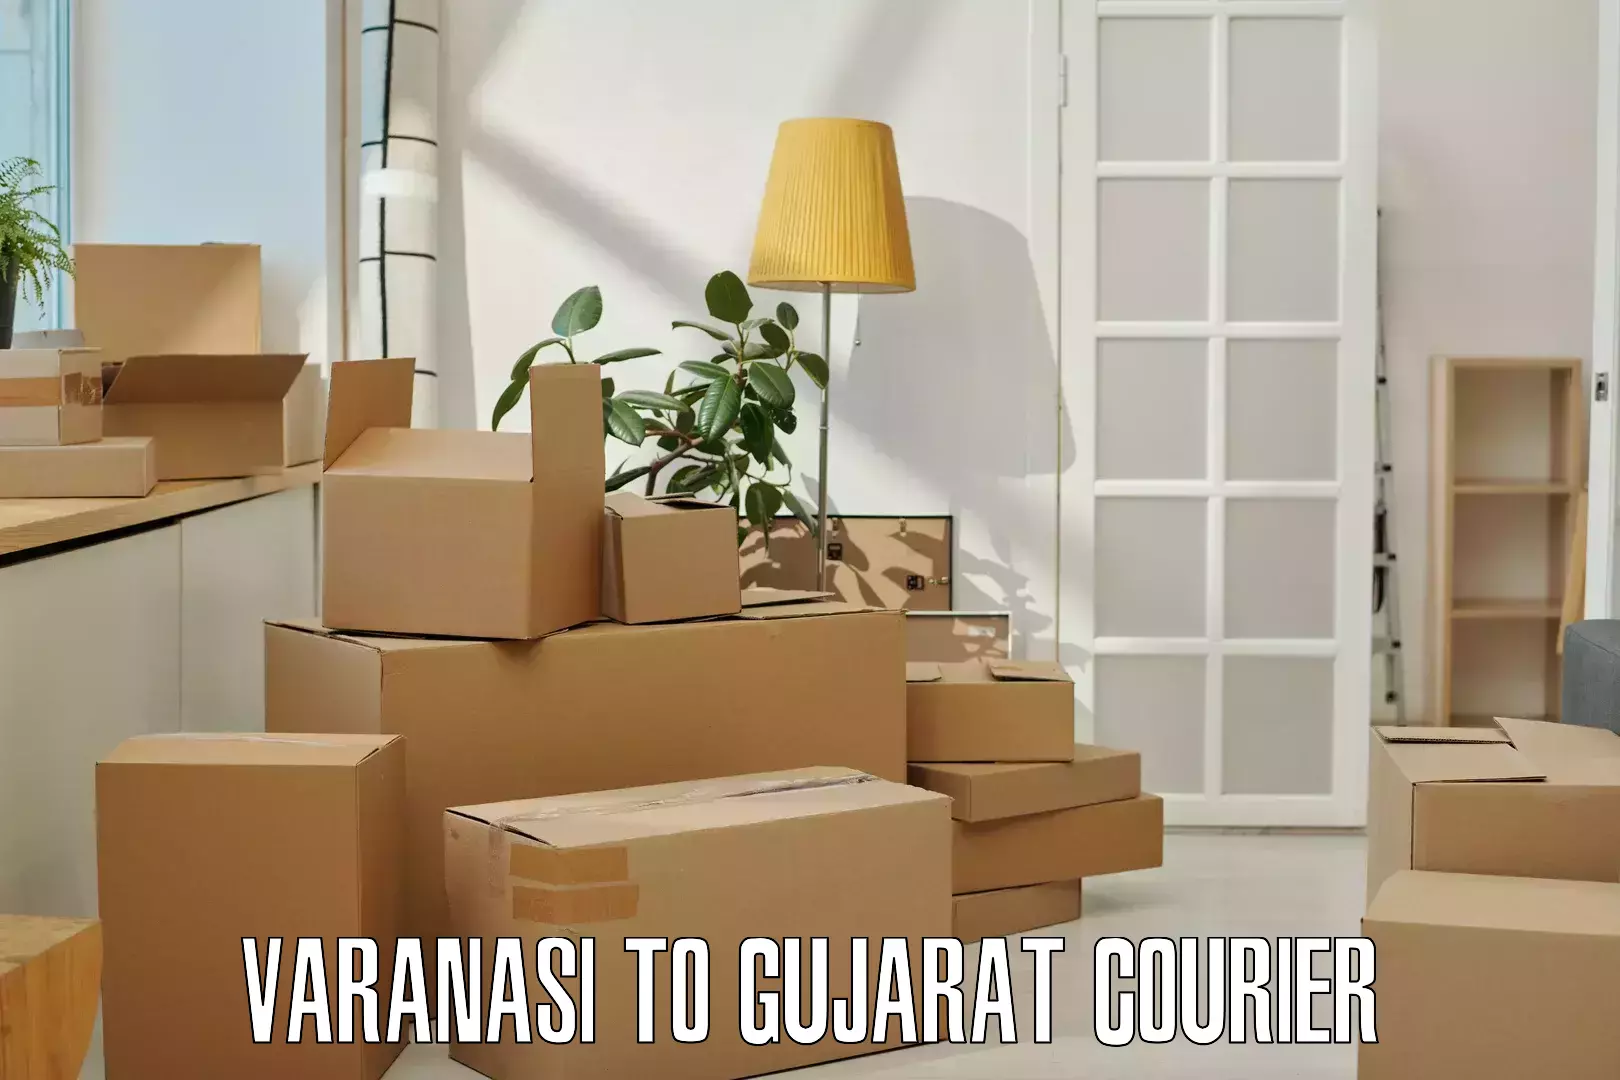 Efficient order fulfillment Varanasi to Gujarat